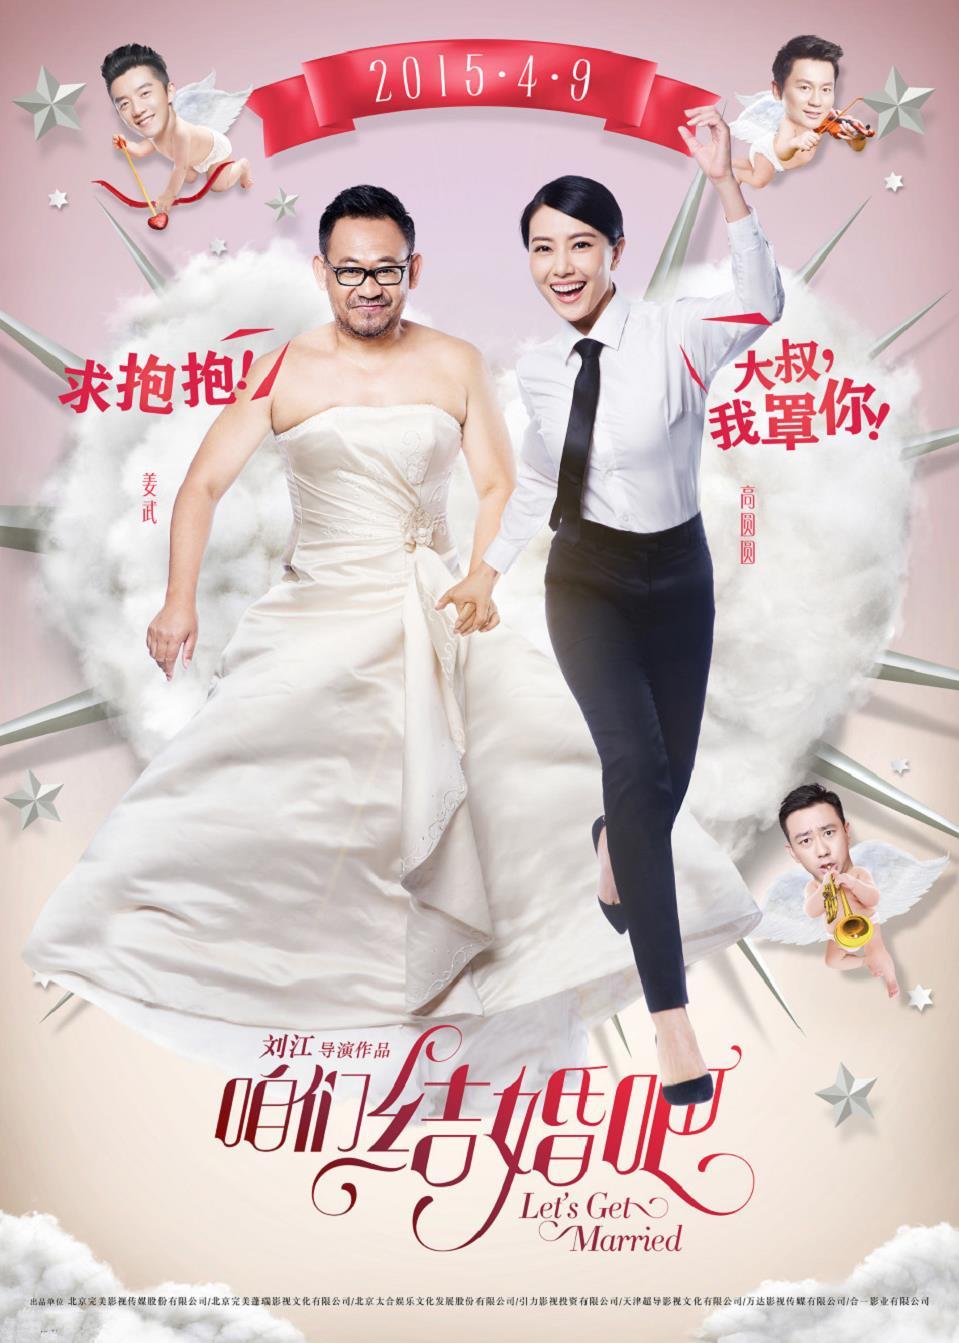 《咱们结婚吧》反串版海报 男撒娇女霸气,《咱们结婚吧》反串版海报-姜武高圆圆